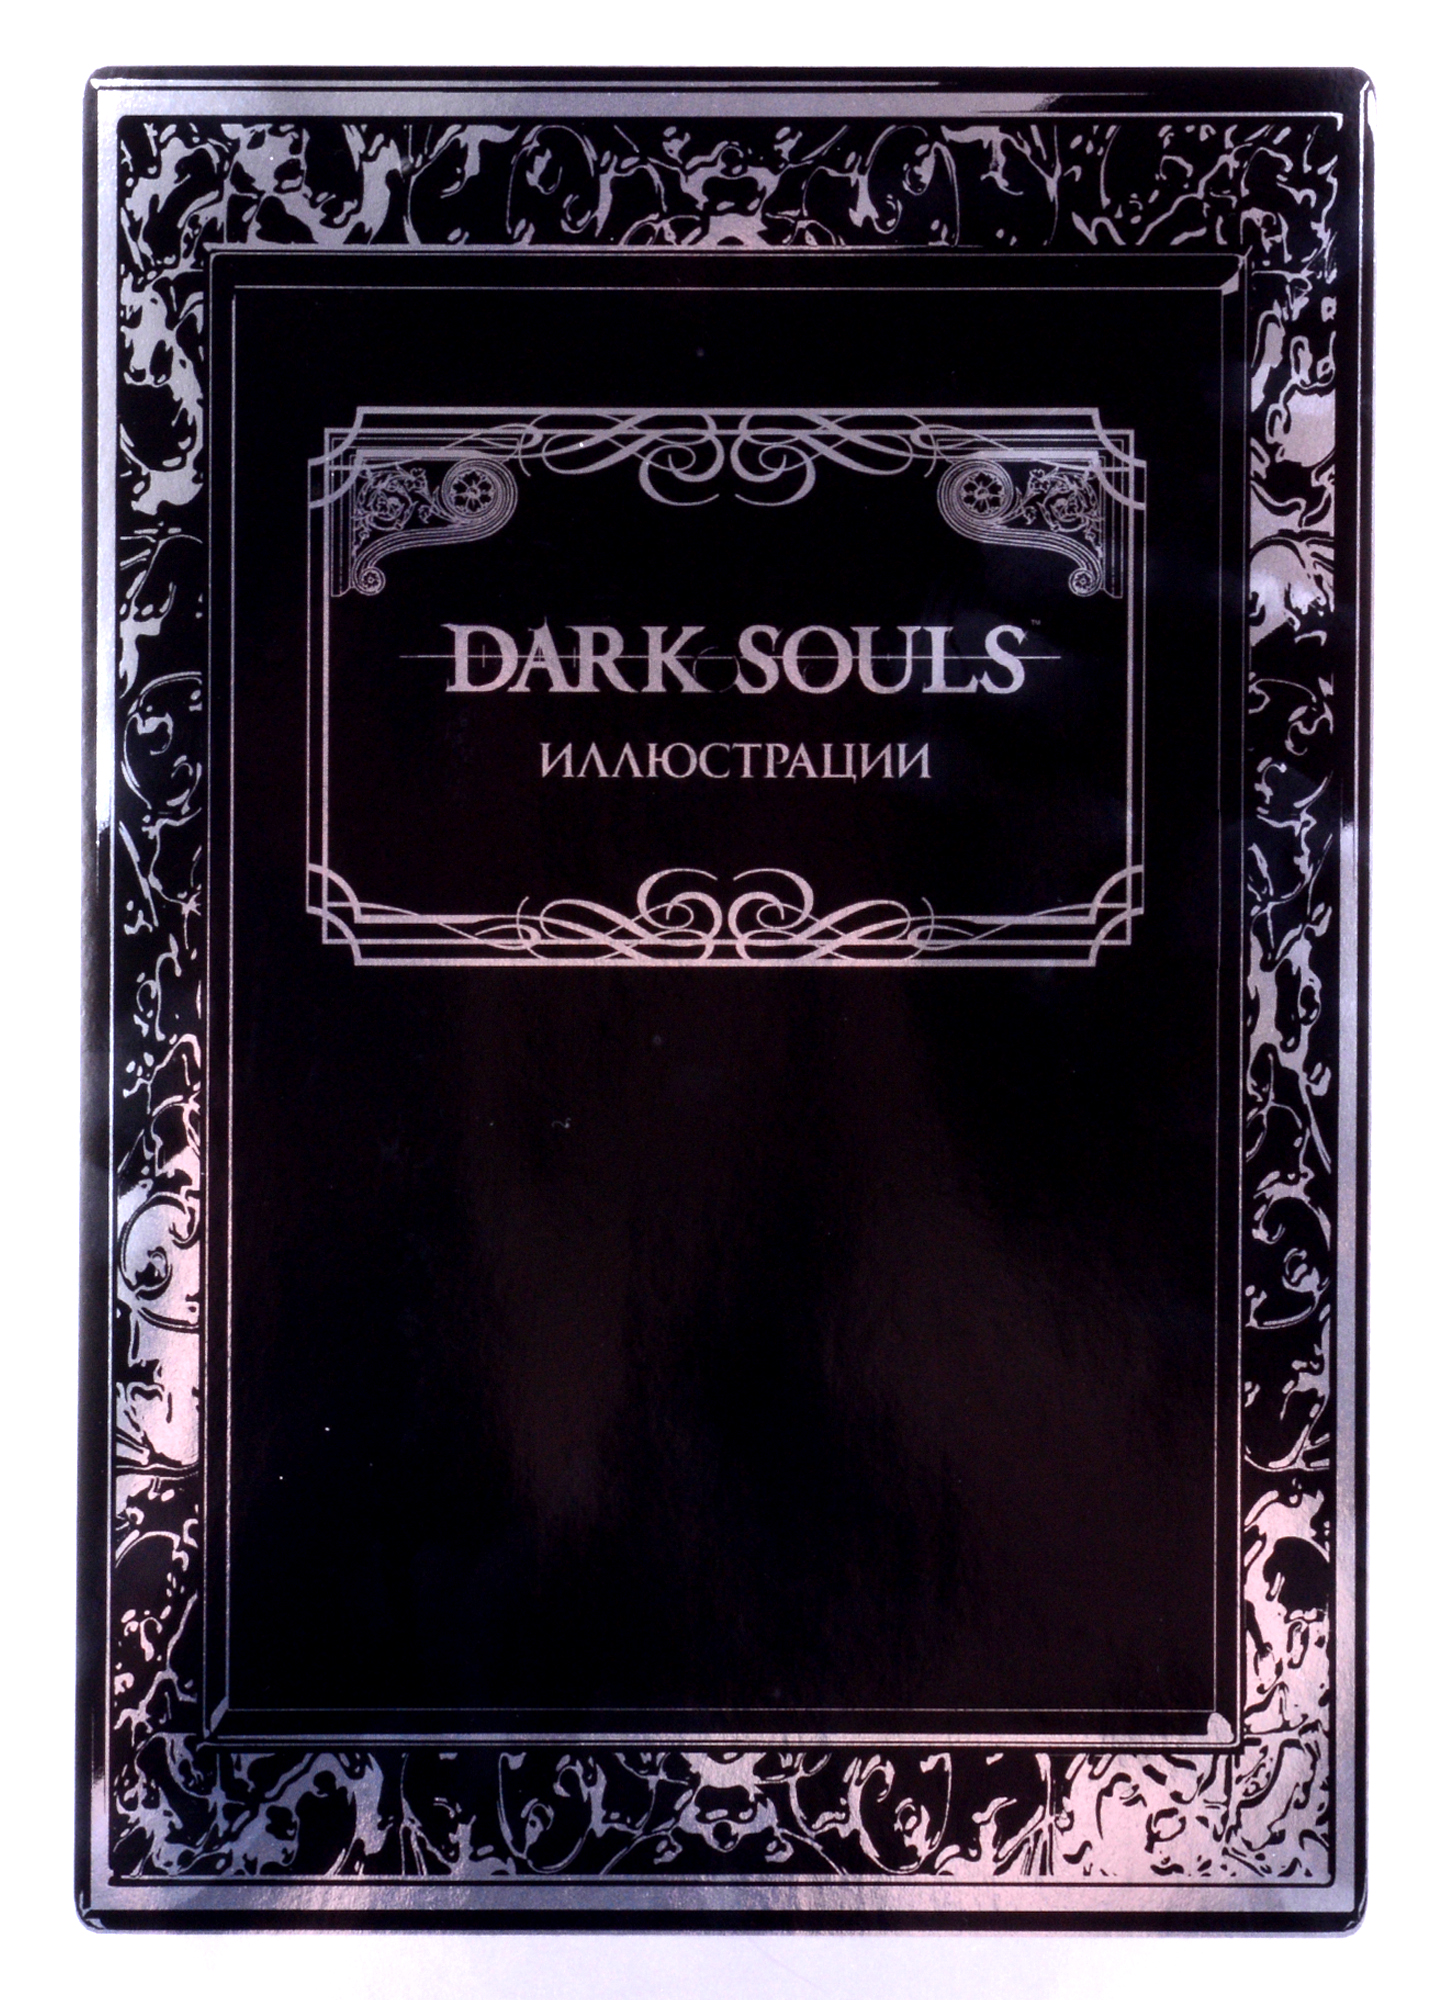 Dark Souls: Иллюстрации dark souls trilogy [ps4]